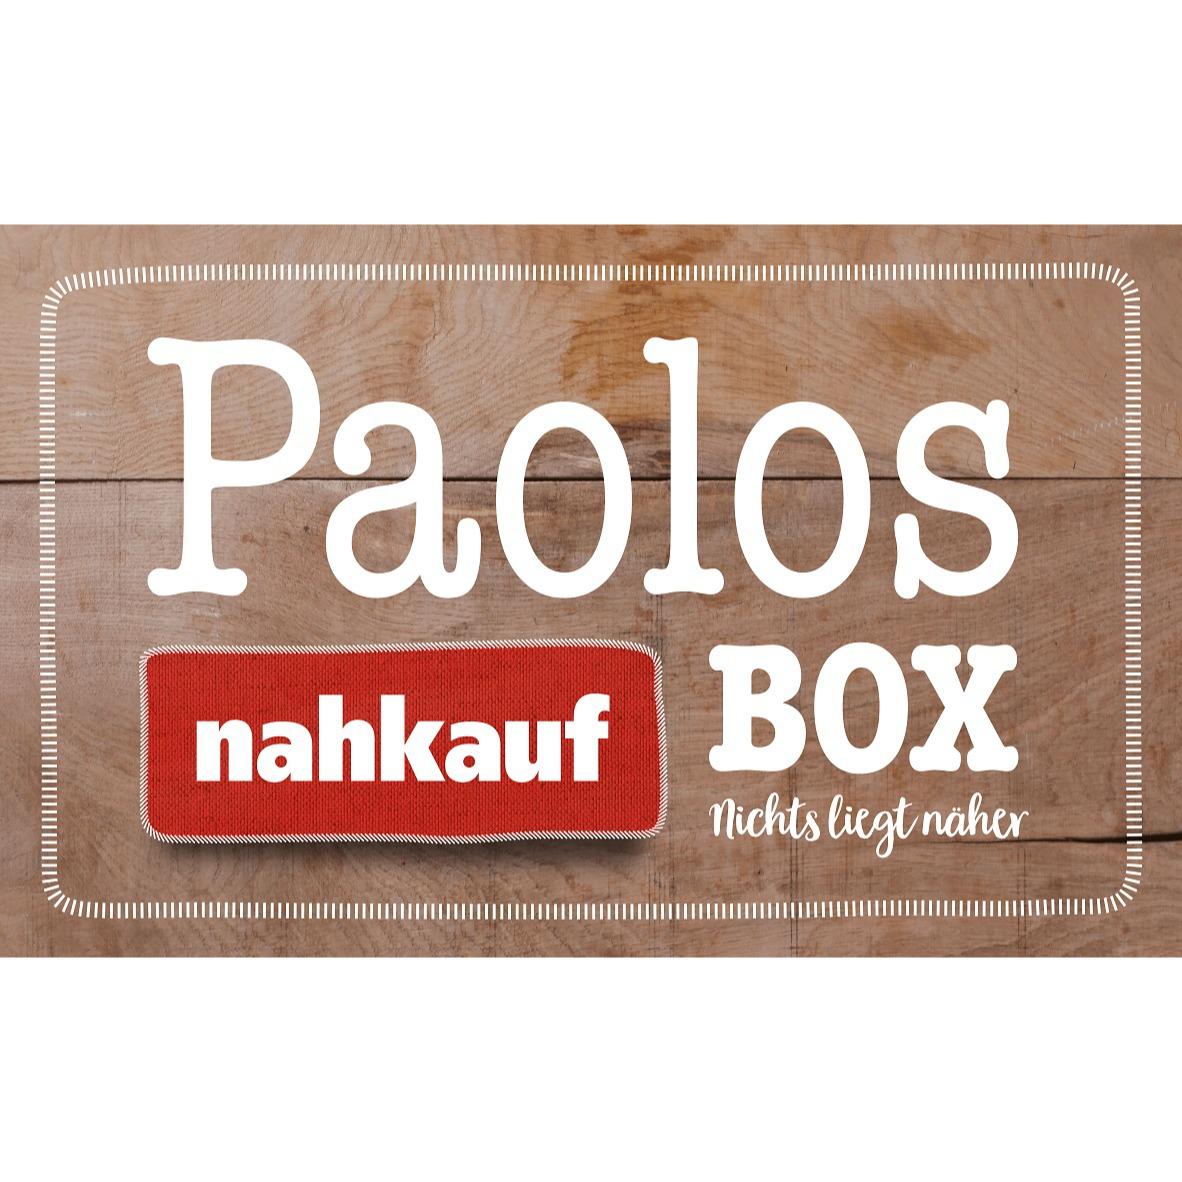 Logo von Paolo's nahkauf Box